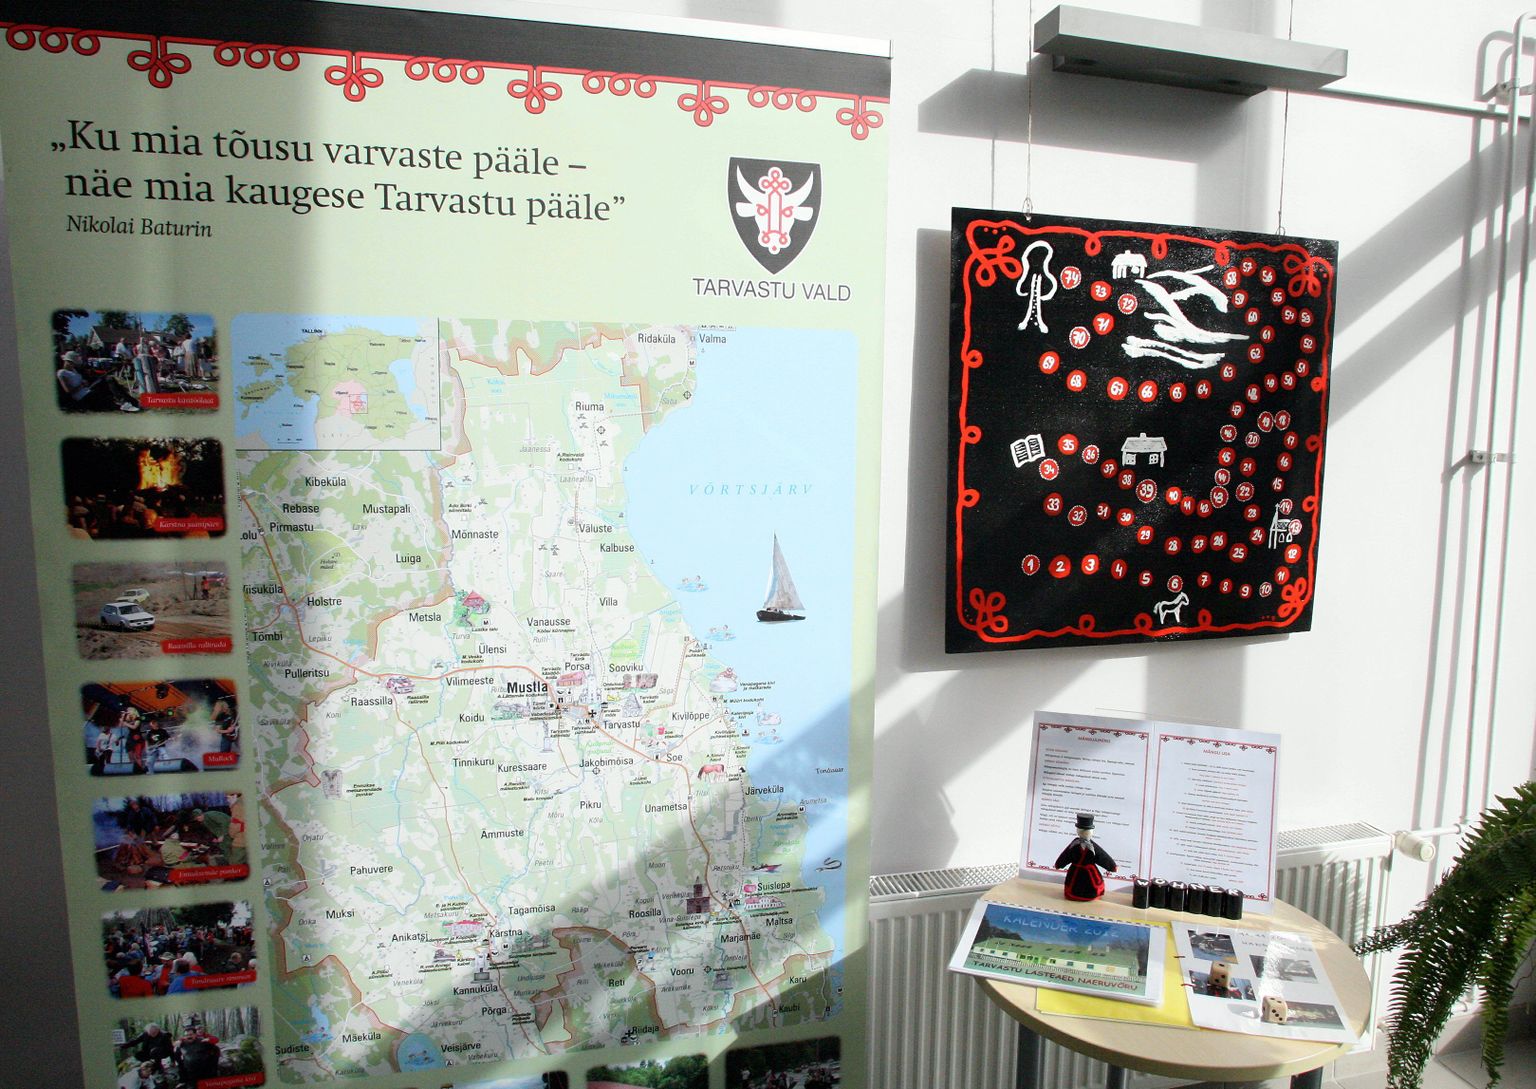 Näitus «Tarvastu kultuurilugu mängudes» Viljandi linnaraamatukogu trepihallis sügisel 2012.

er/ Foto ELMO RIIG/ SAKALA